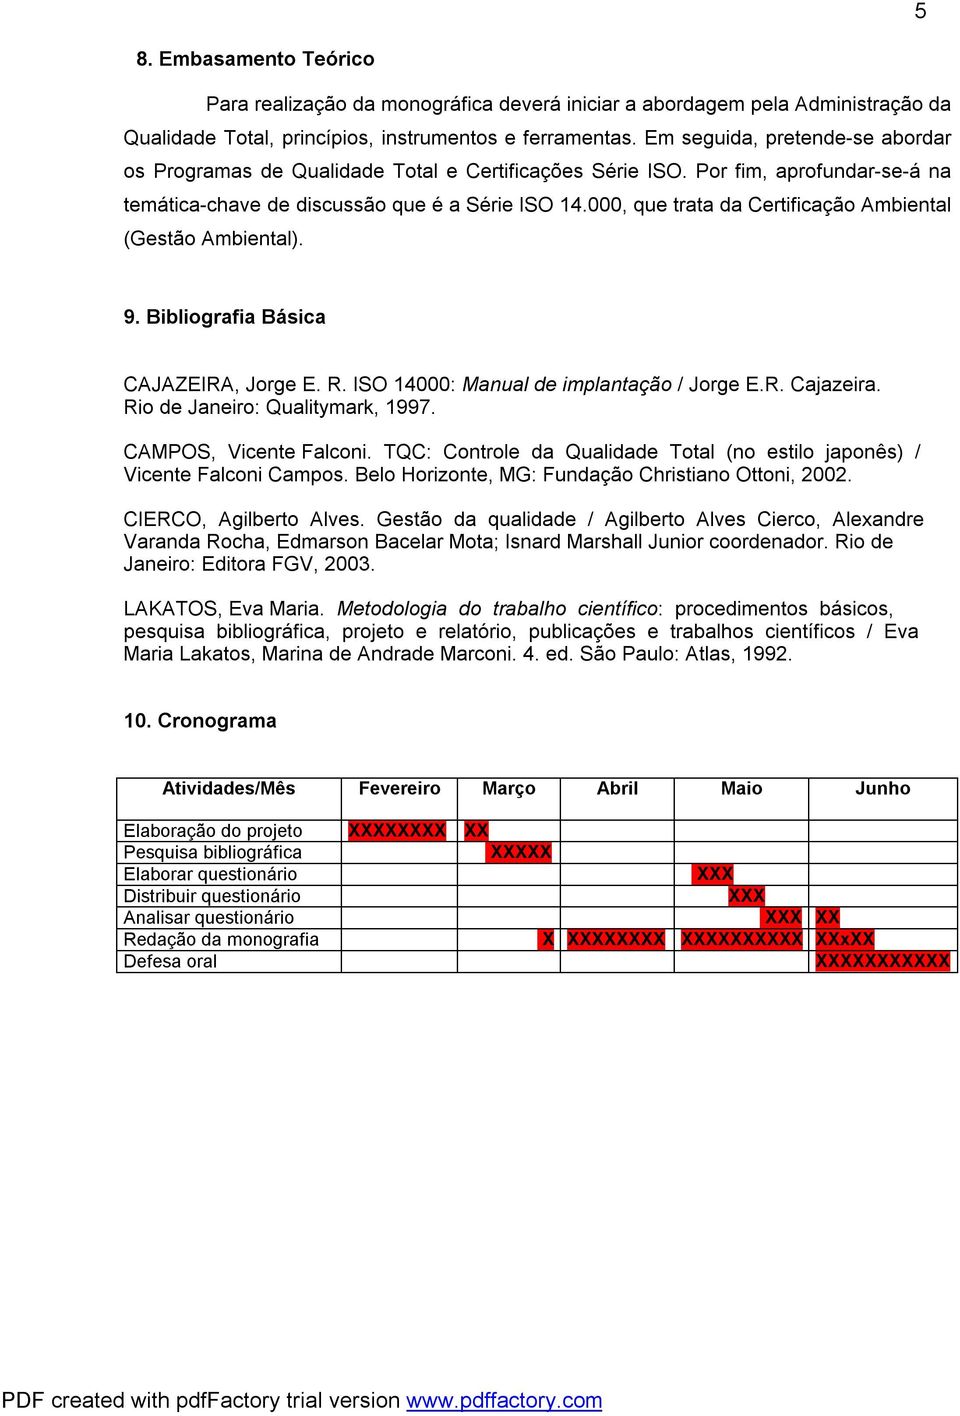 000, que trata da Certificação Ambiental (Gestão Ambiental). 9. Bibliografia Básica CAJAZEIRA, Jorge E. R. ISO 14000: Manual de implantação / Jorge E.R. Cajazeira. Rio de Janeiro: Qualitymark, 1997.